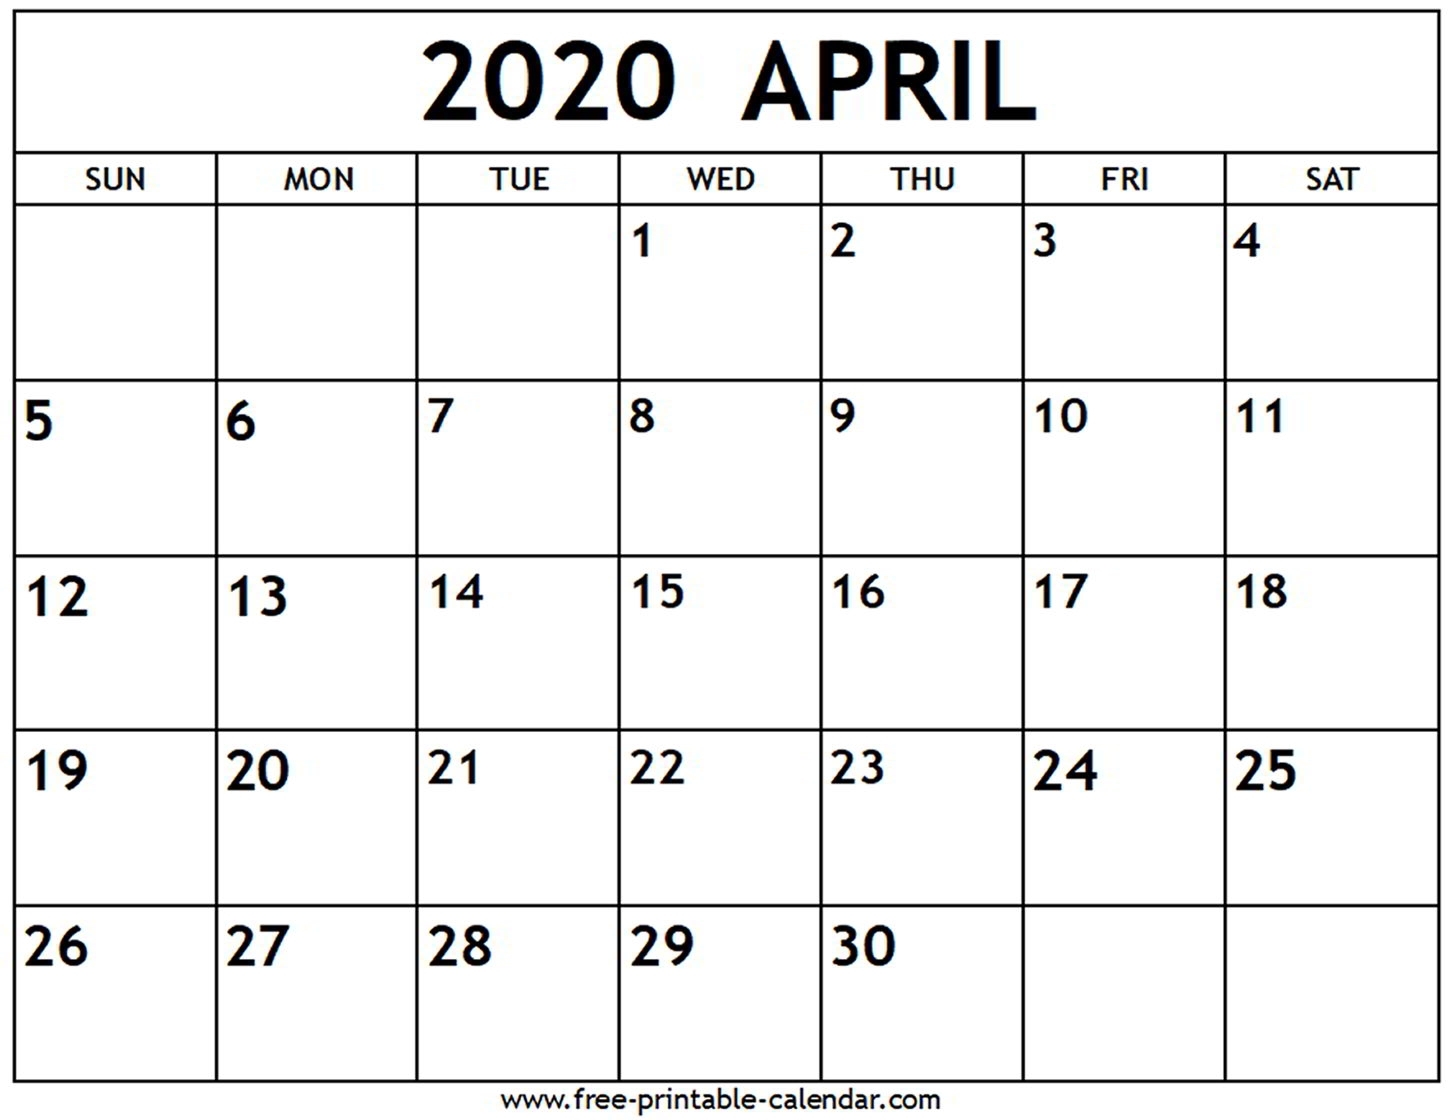 April 2020 Calendar - Free-Printable-Calendar throughout Printable Fill In Calendar For 2020